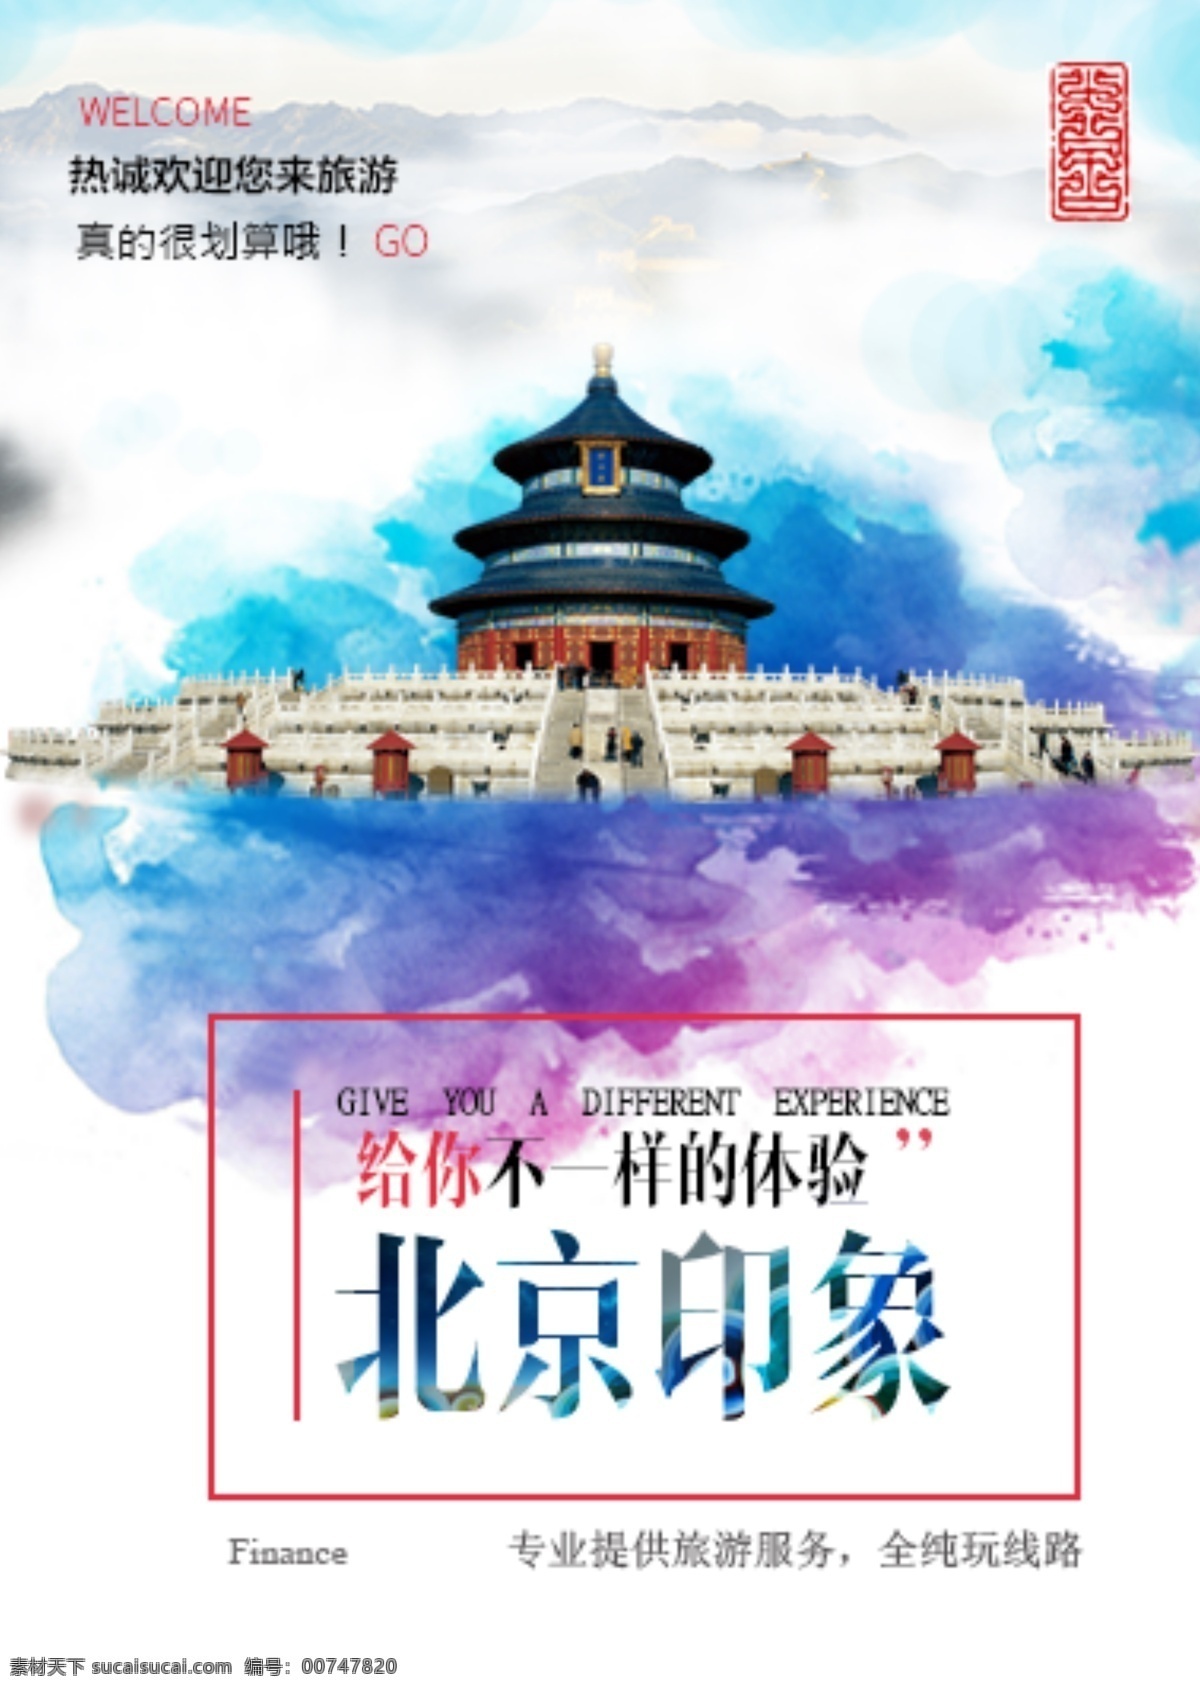 北京 印象 旅游 海报 水墨 彩色 墨迹 映像 天坛